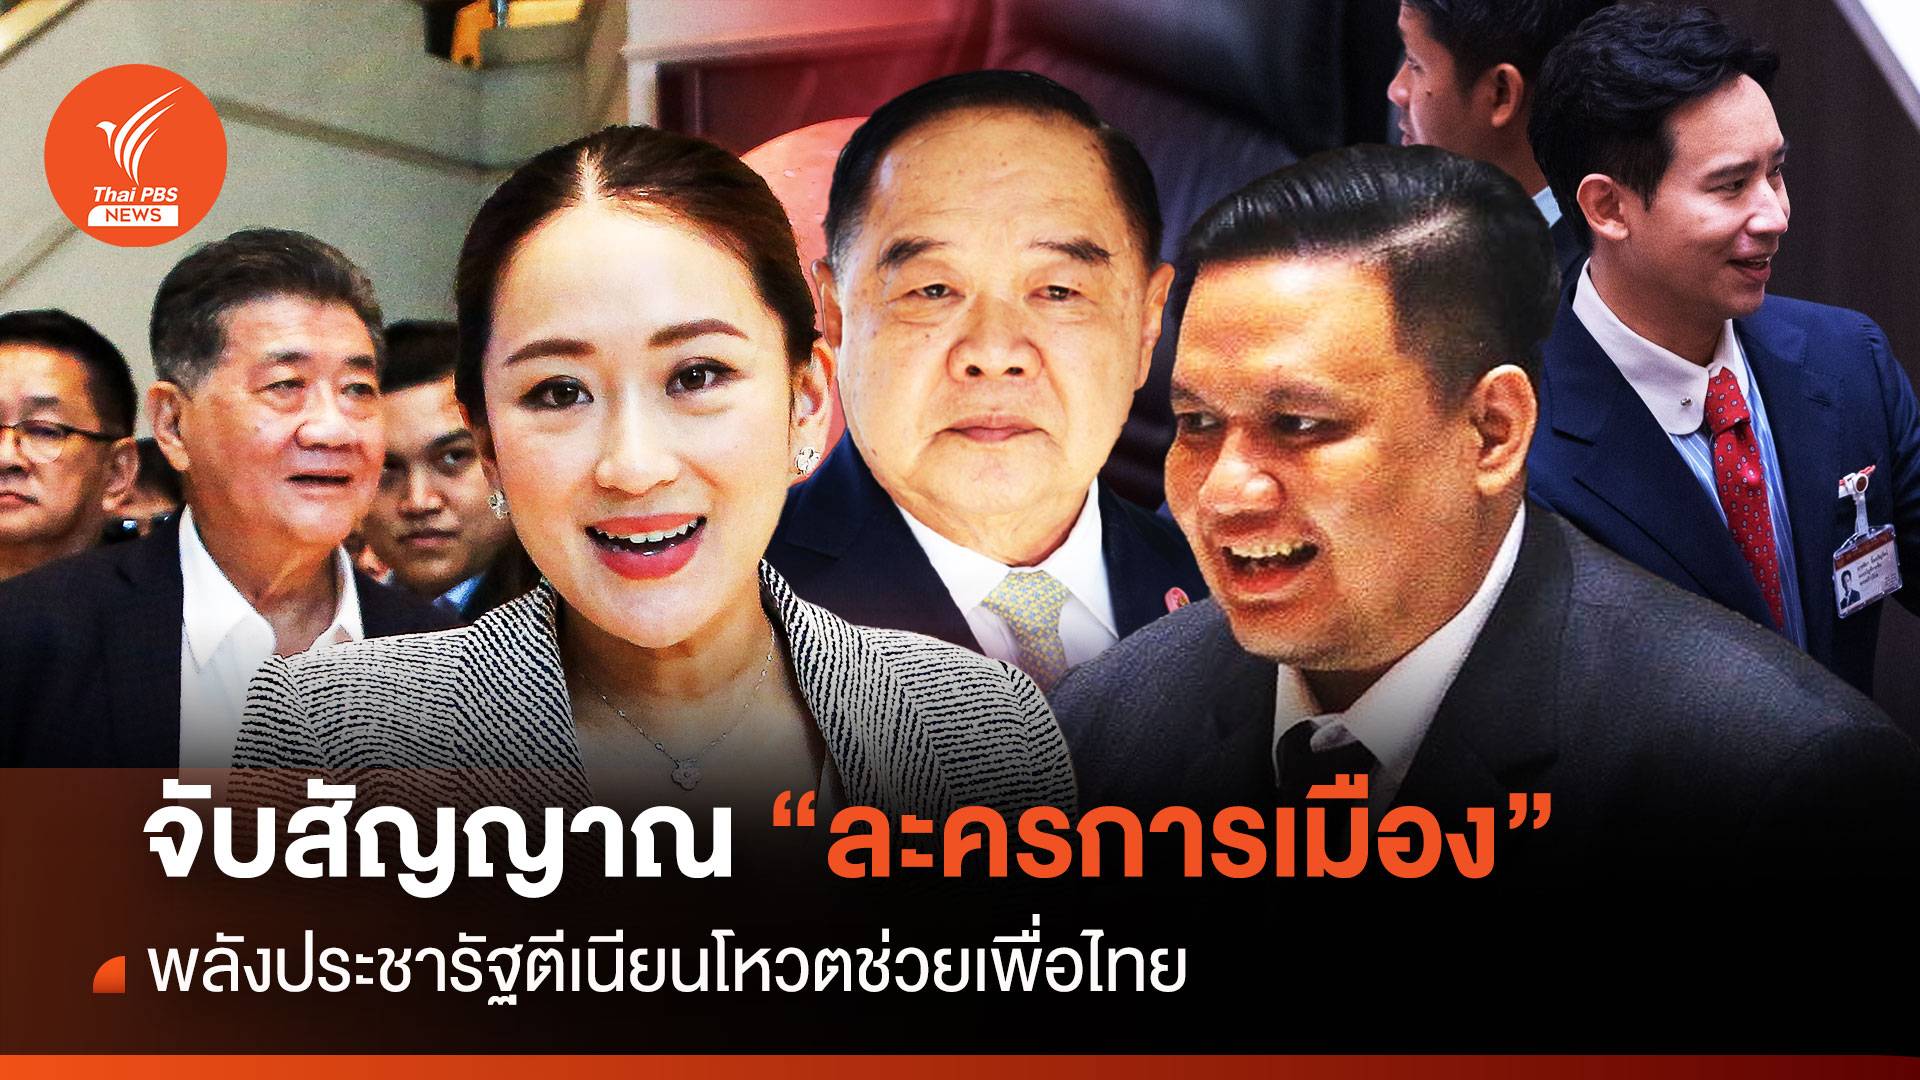 “ละครการเมือง” พปชร. ตีเนียนโหวตช่วยเพื่อไทย